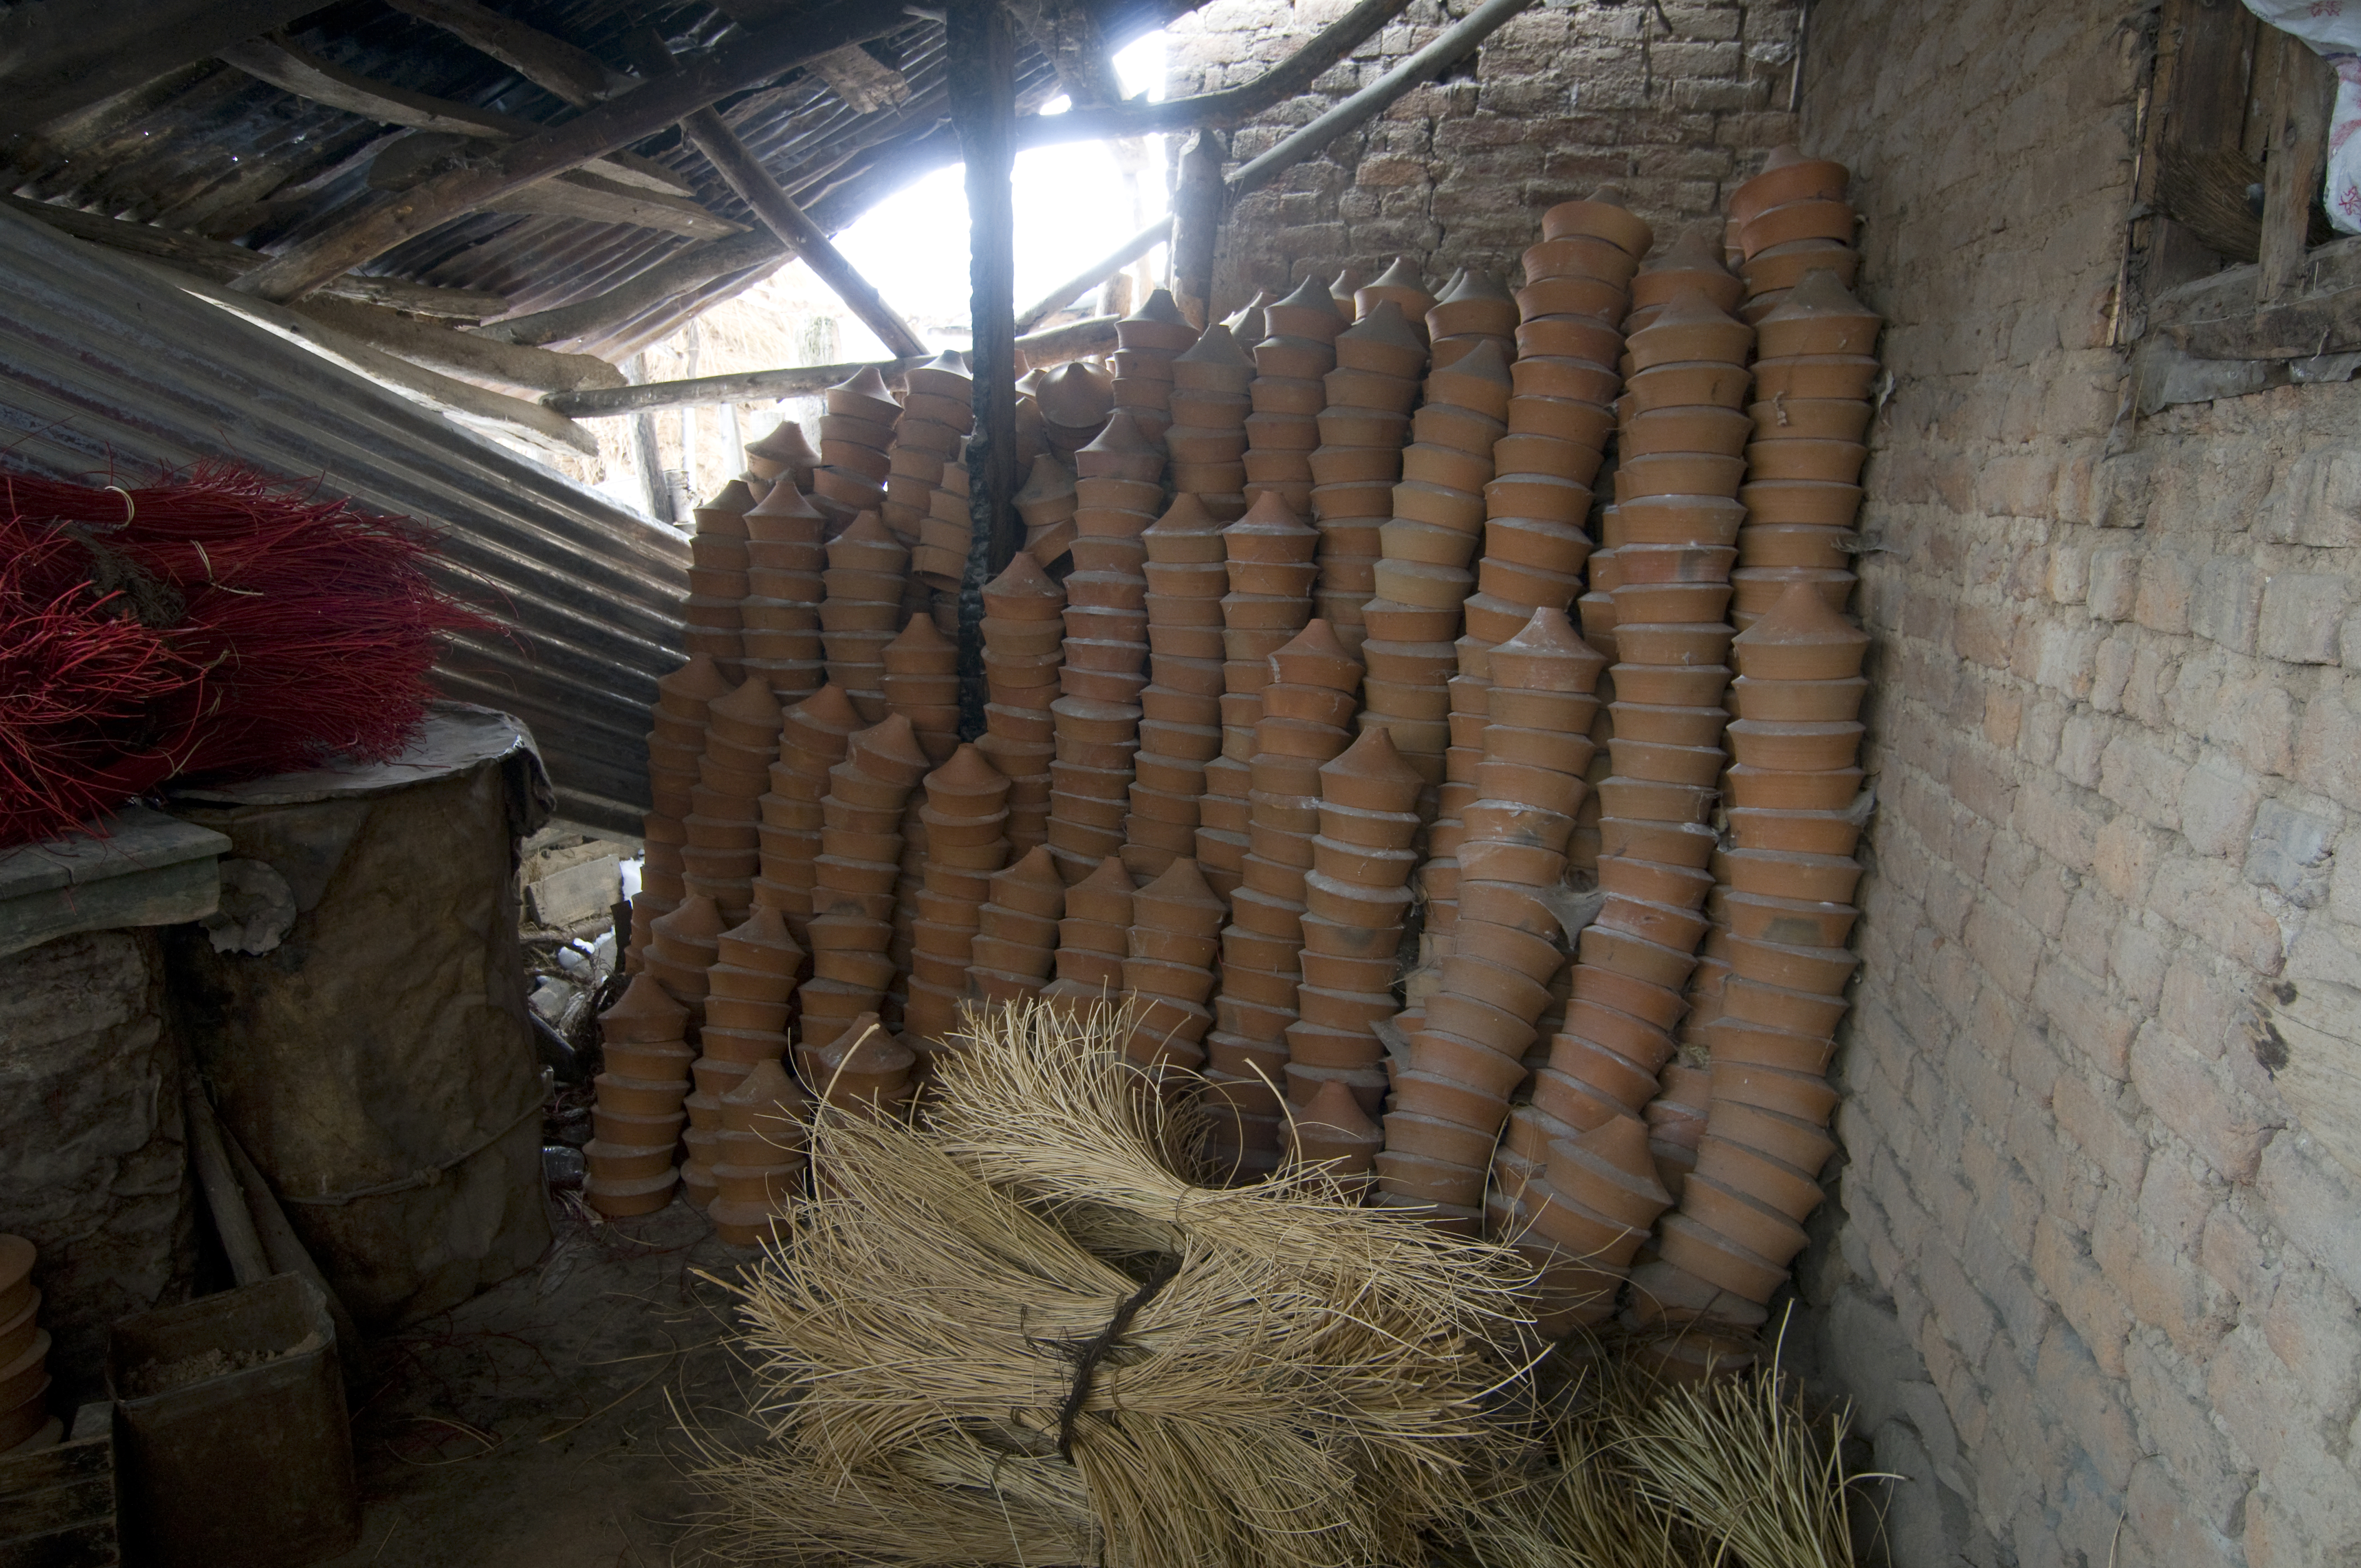 Die saisonale Nachfrage nach den wärmenden Kangdi-Gefäßen kann mehrere tausend Stück überschreiten. Foto: Sugato Mukherjee